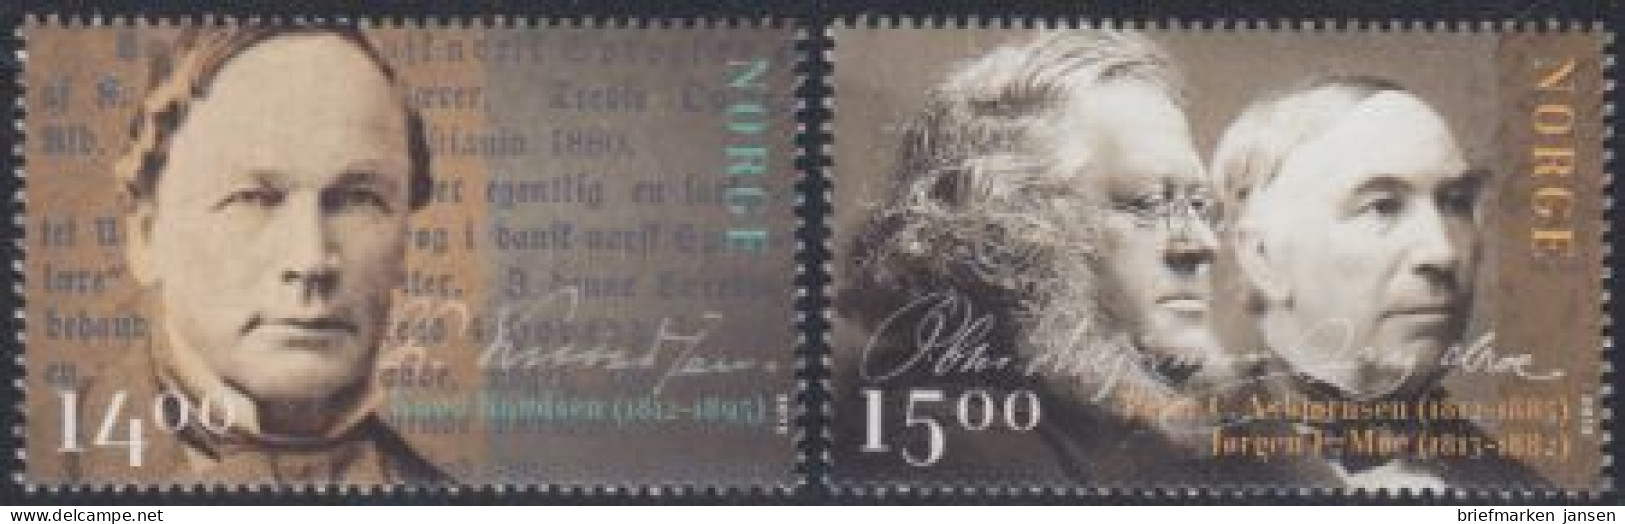 Norwegen Mi.Nr. 1796-97 Knud Knudsen,Peter Christen Asbjornsen, J.Moe (2 Werte) - Unused Stamps